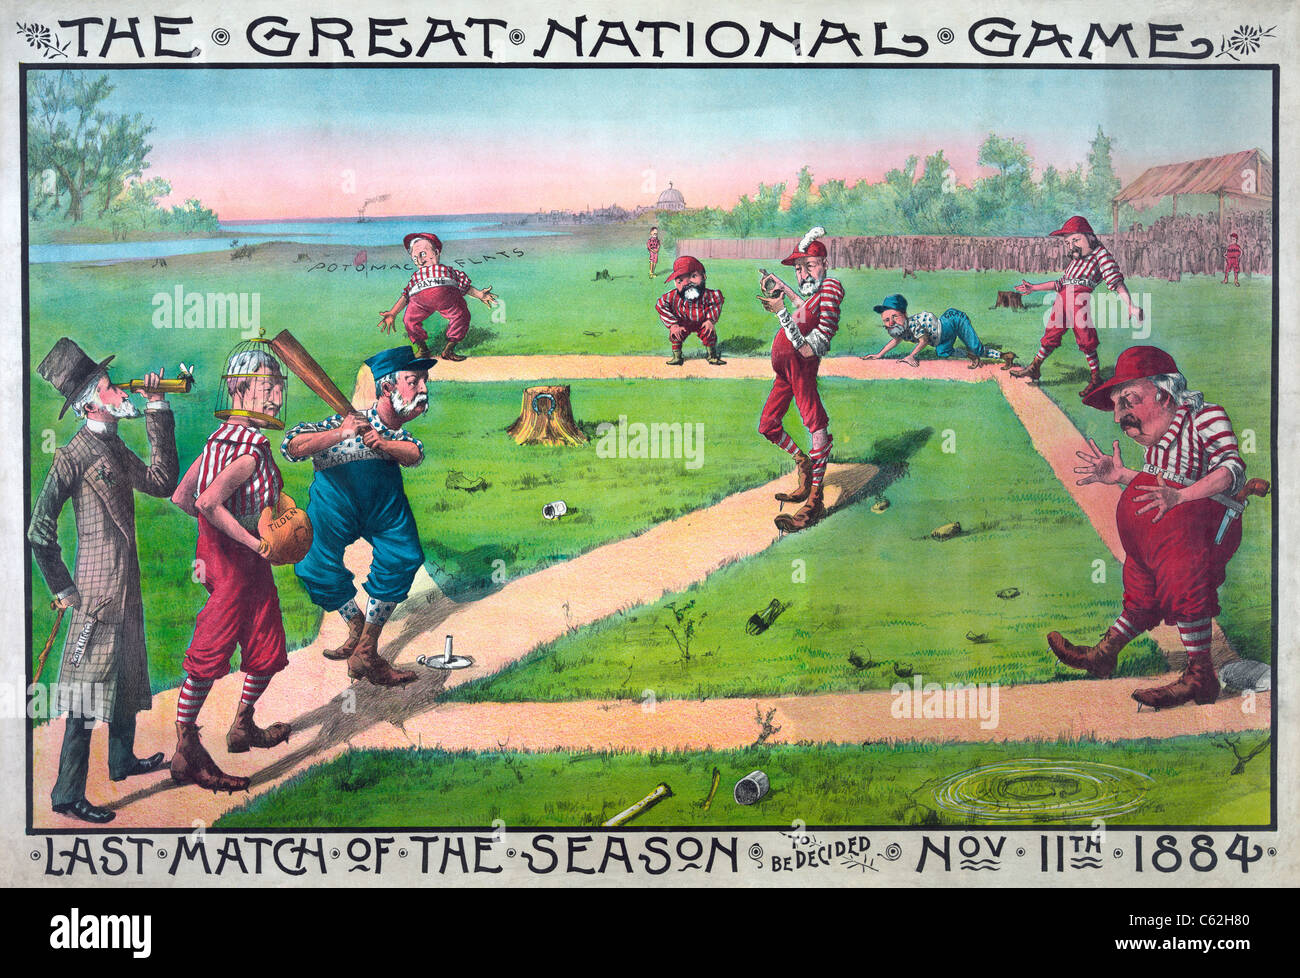 Das große Nationalspiel. Letztes Spiel der Saison, 11. November 1884 entschieden werden Stockfoto